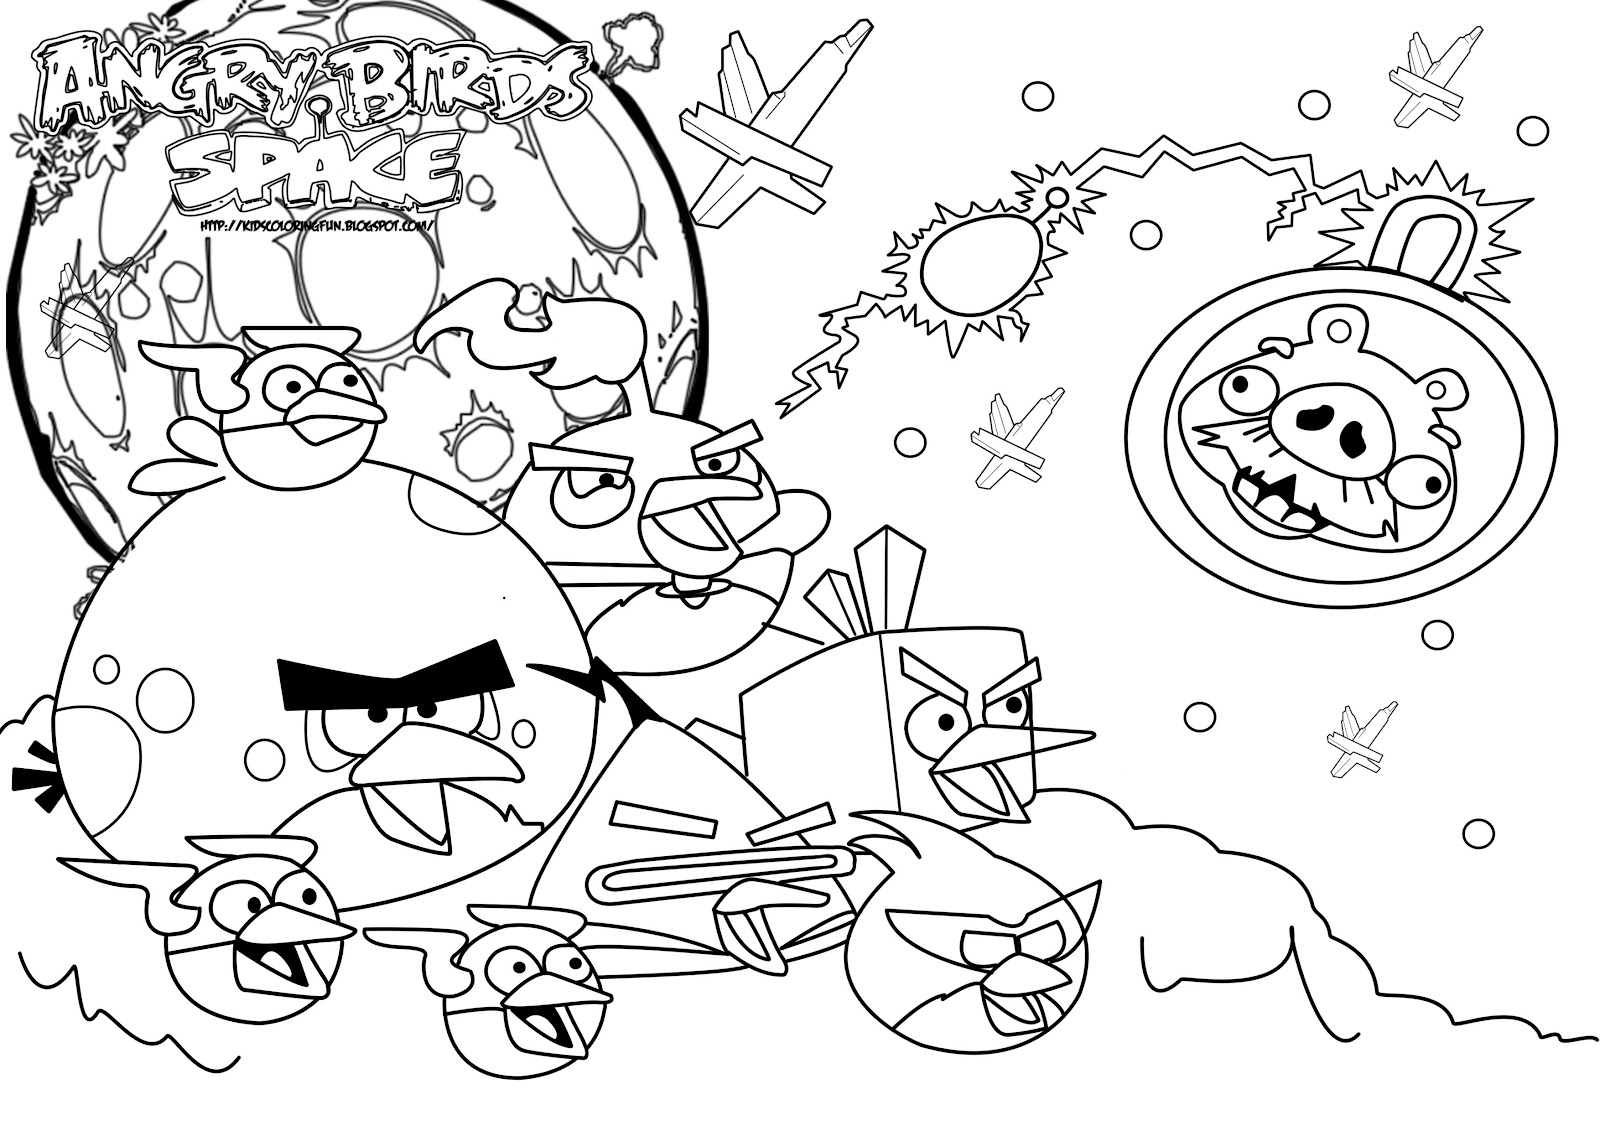 Disegni da colorare gratis Angry Birds (57)